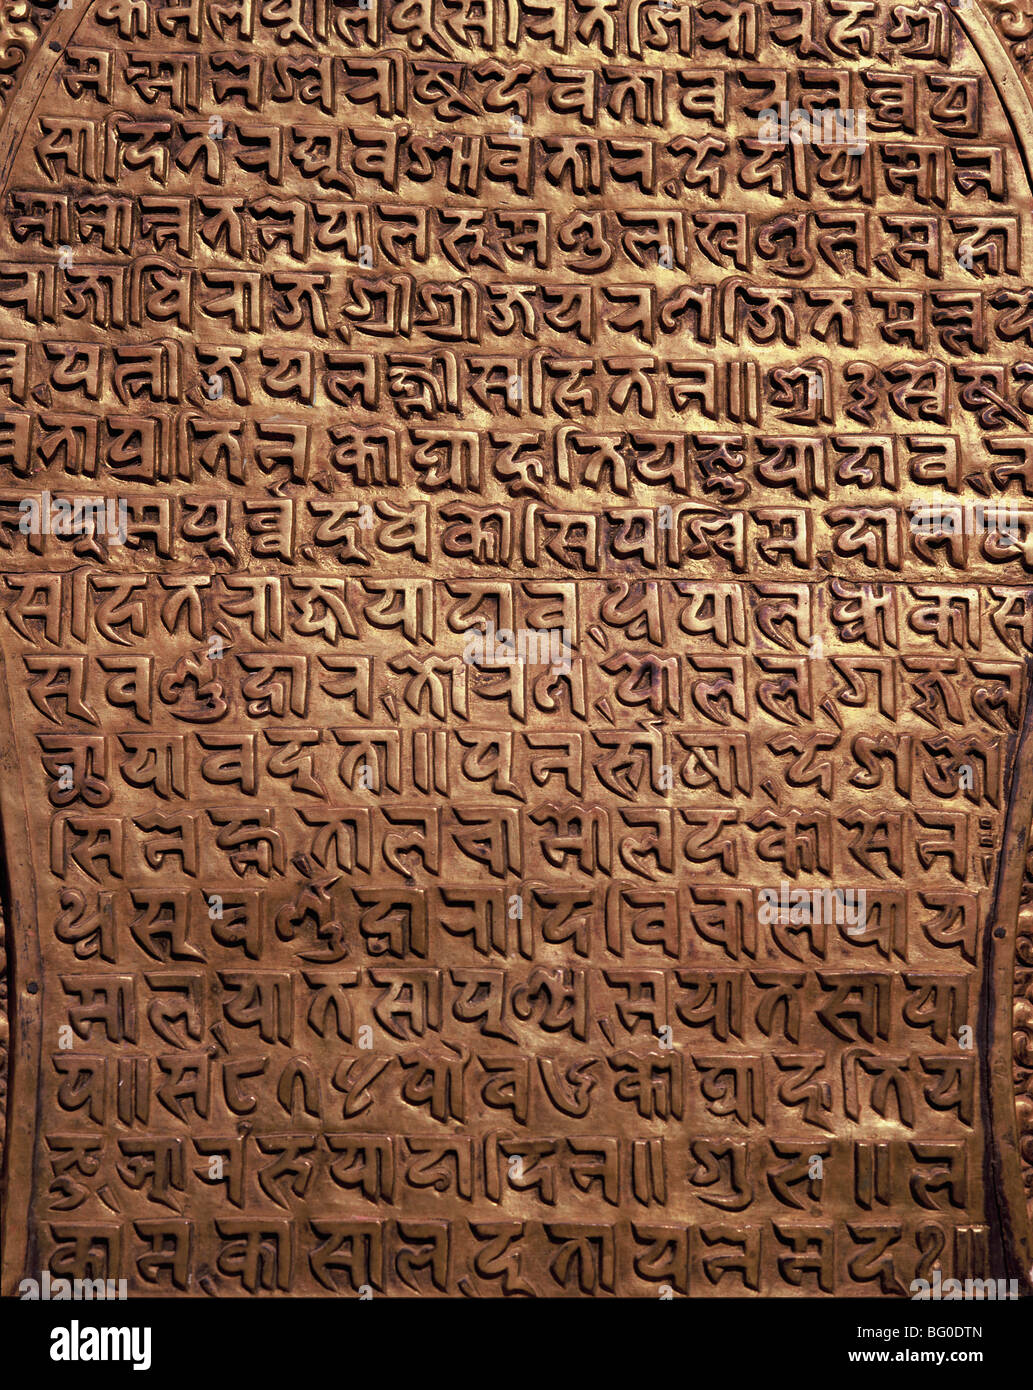 Inscription népalais sur laiton au Royal Palace à Bhaktapur, Népal, Asie Banque D'Images